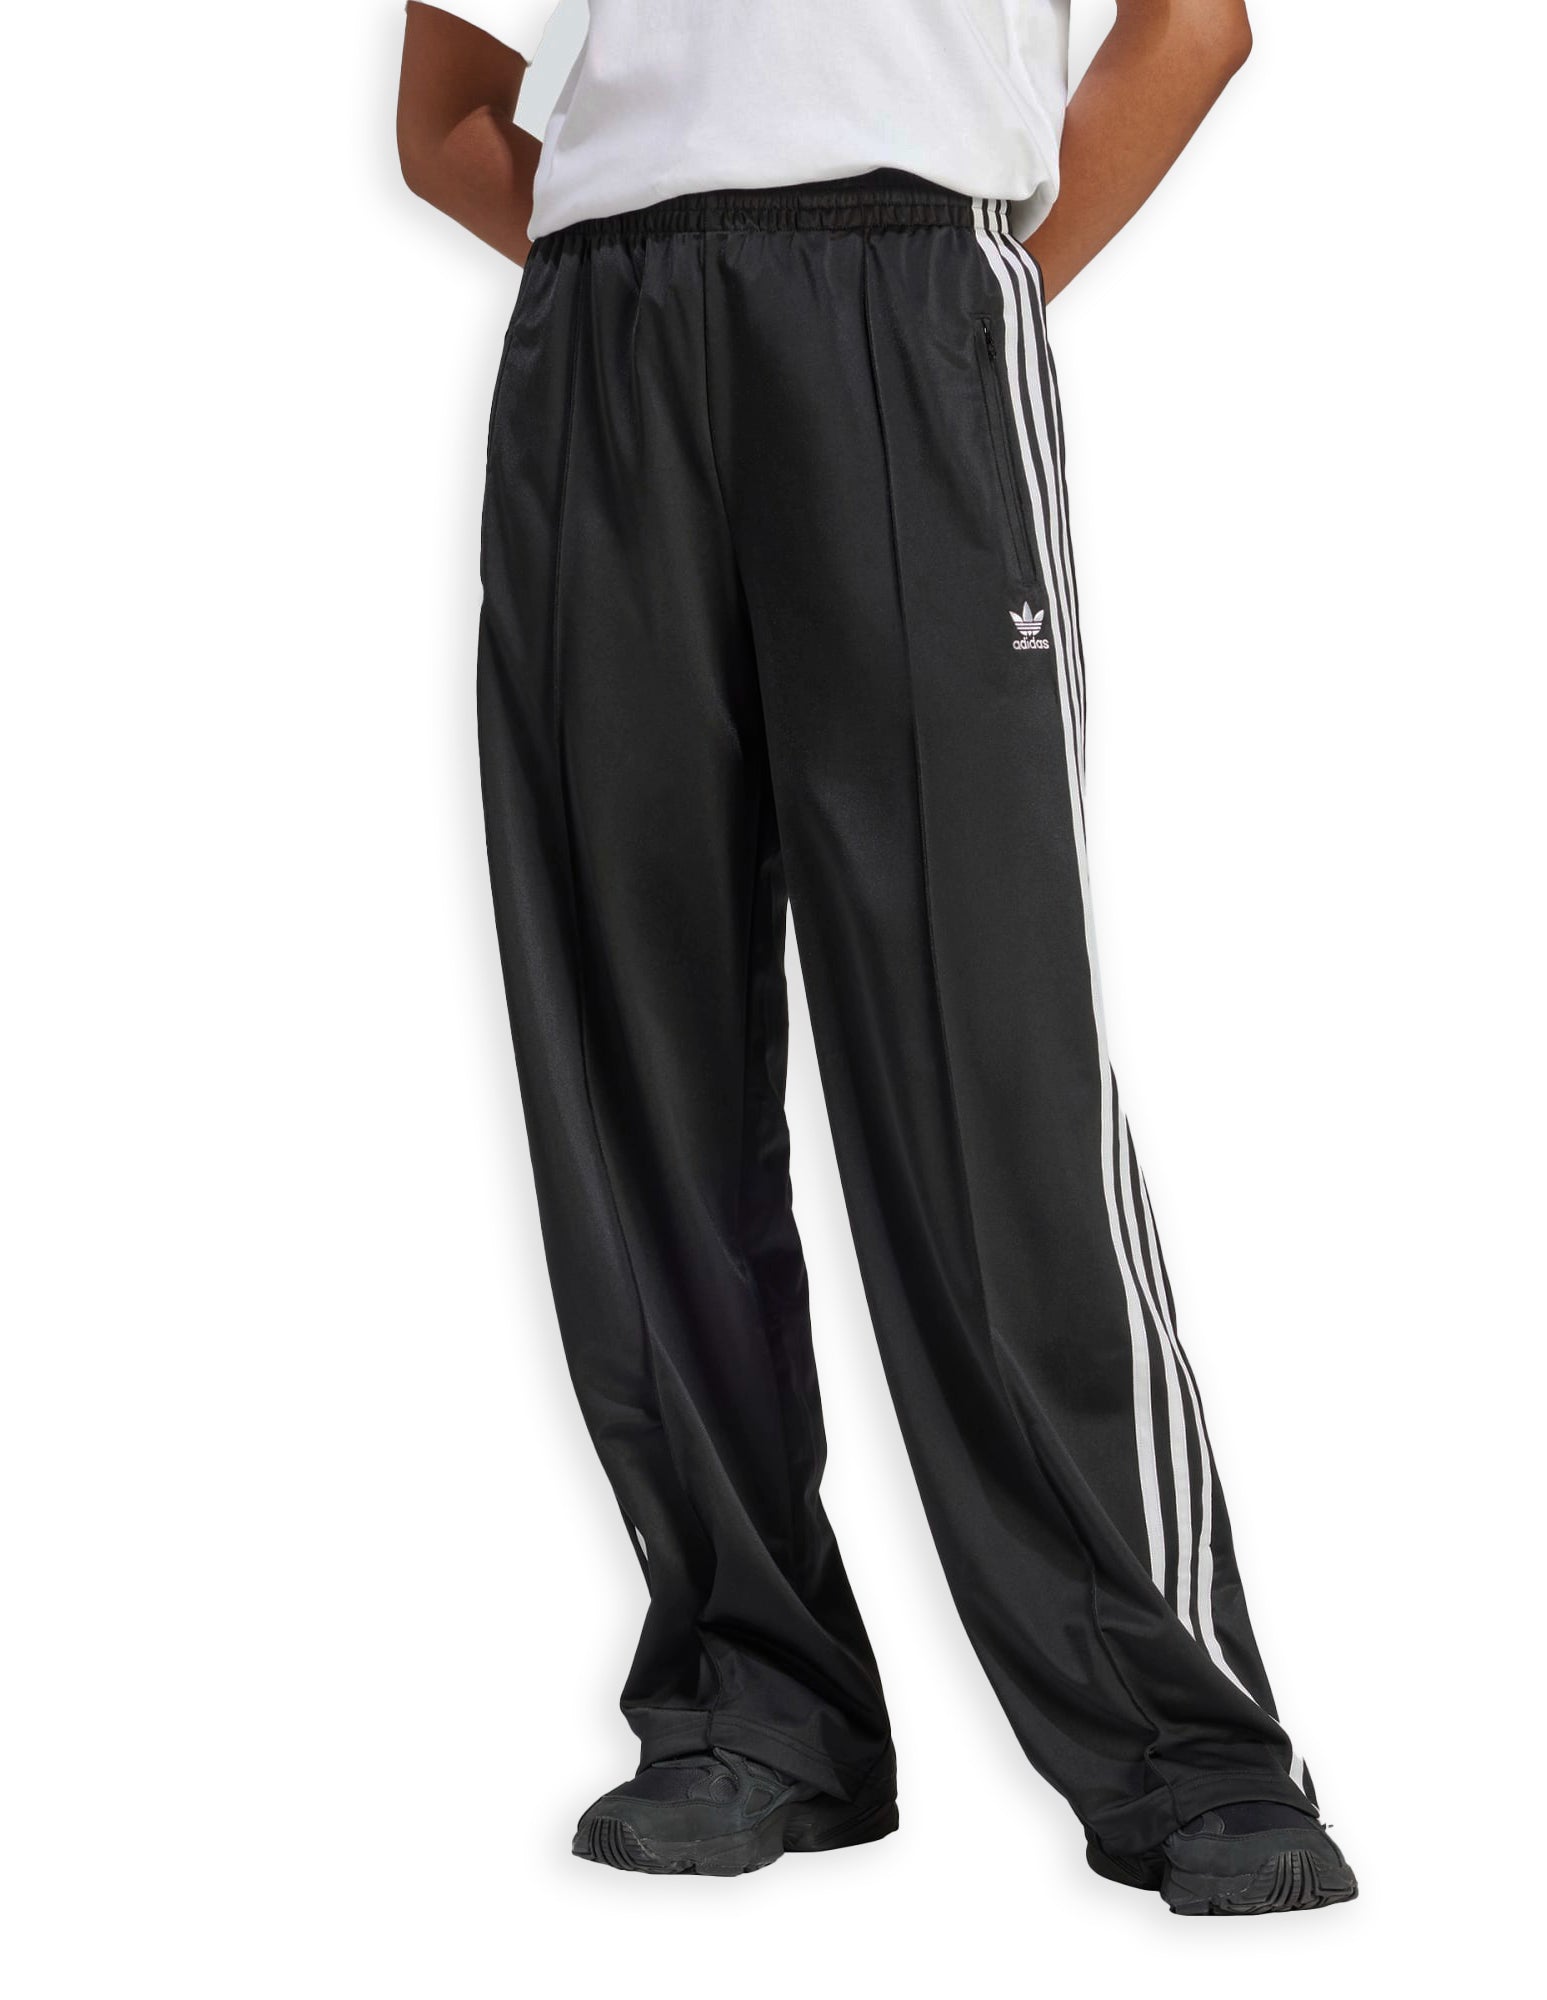 Adidas Firebird Tp Black Women's Pants